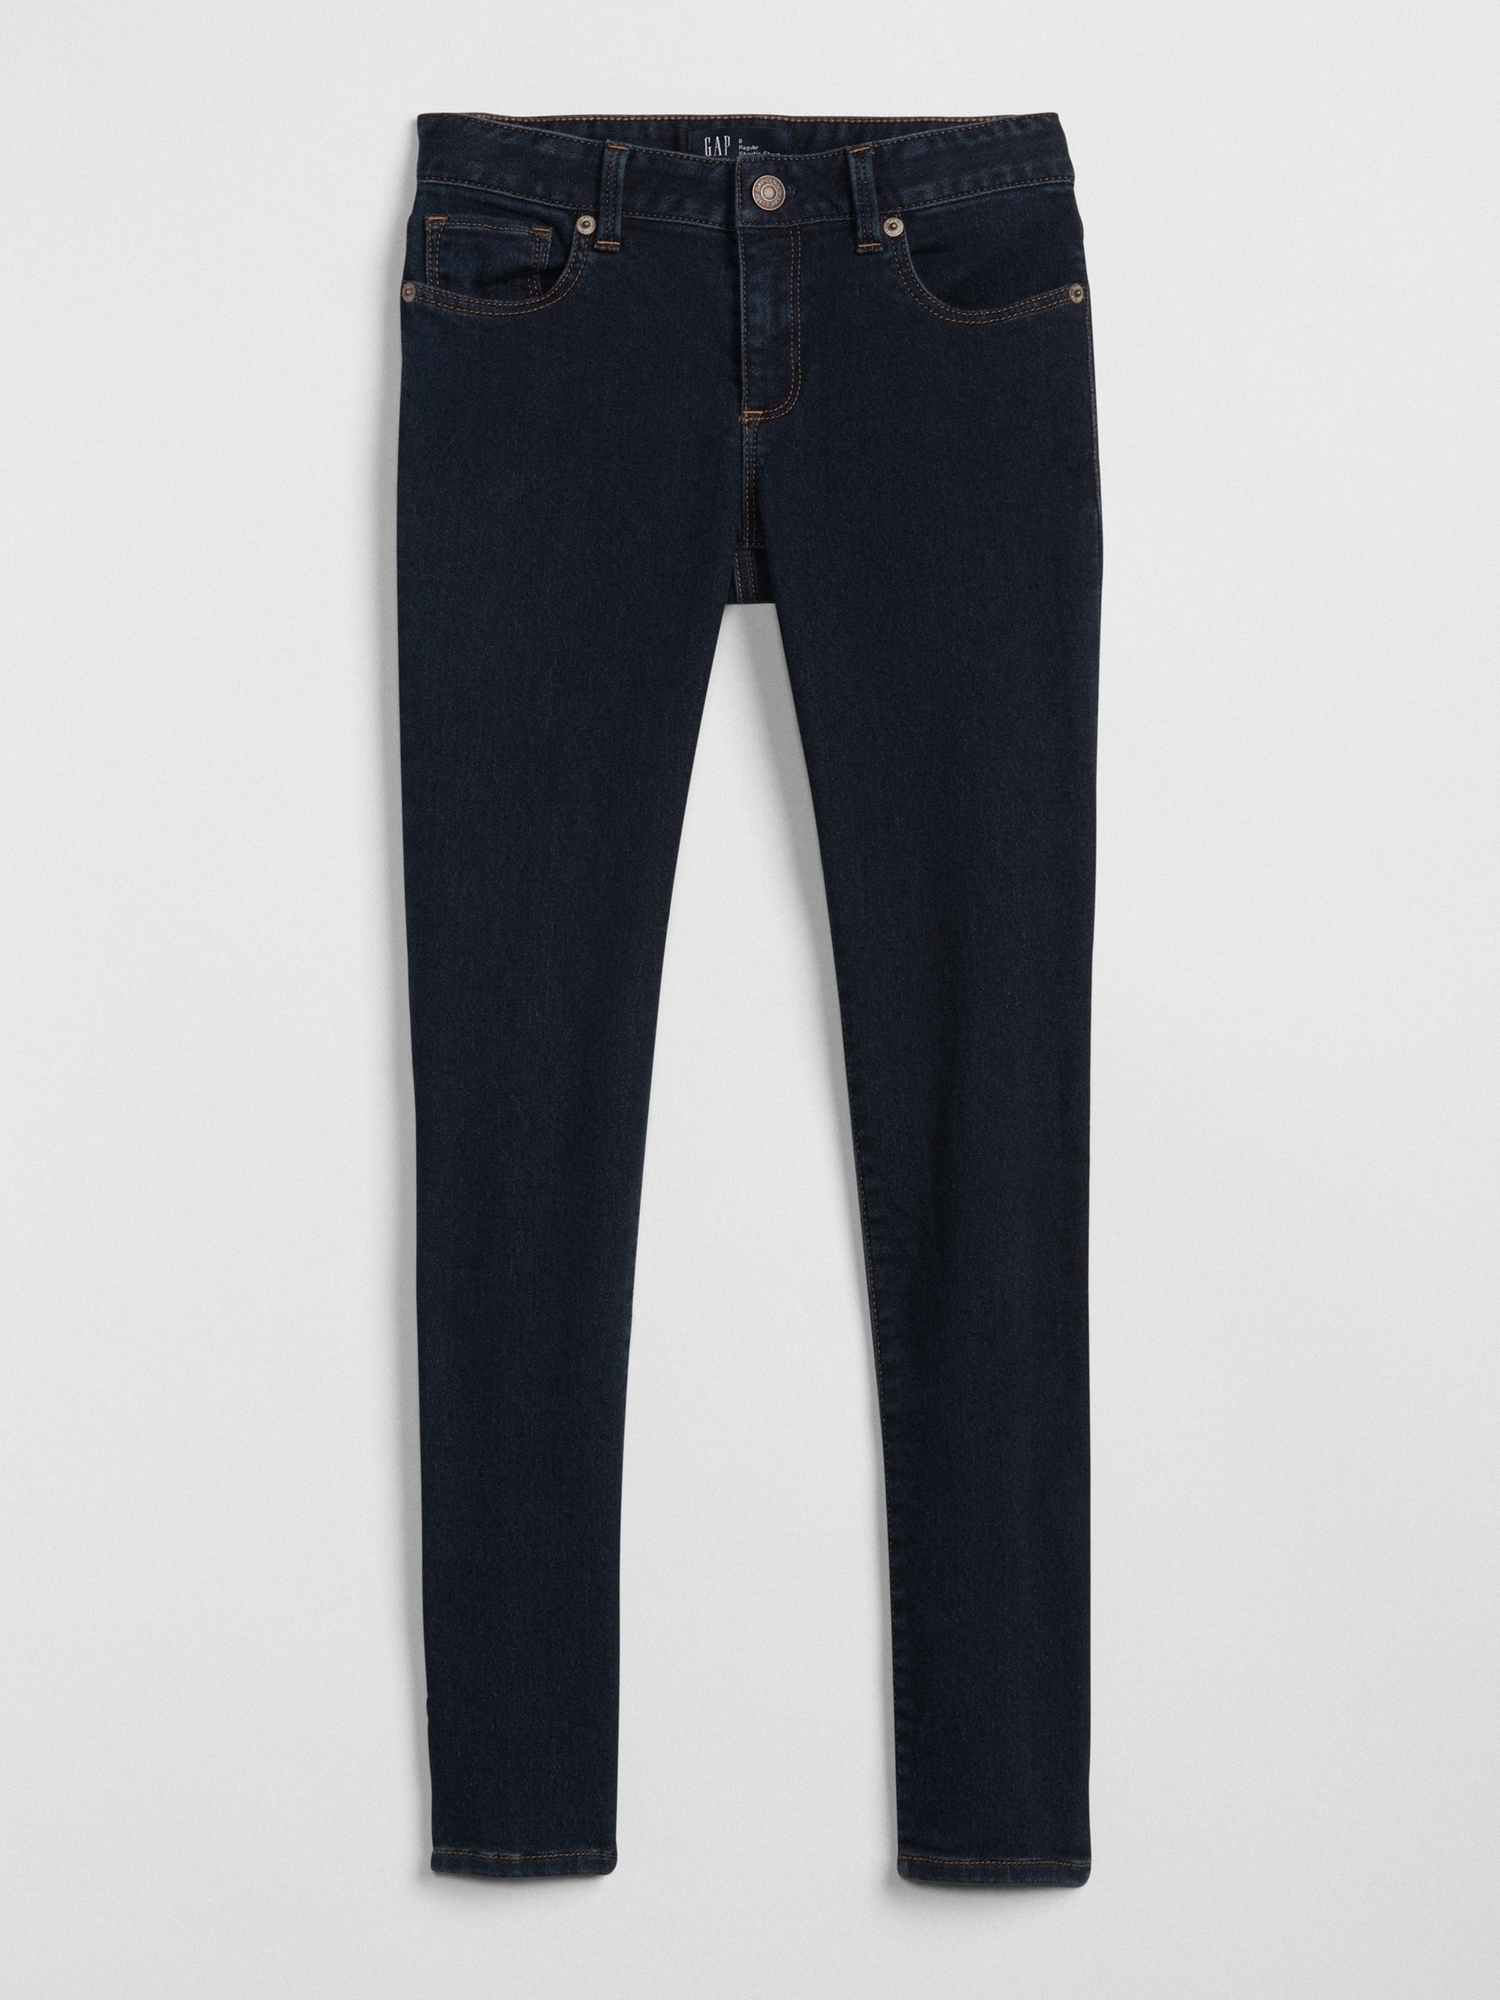 gap super skinny jeans mens